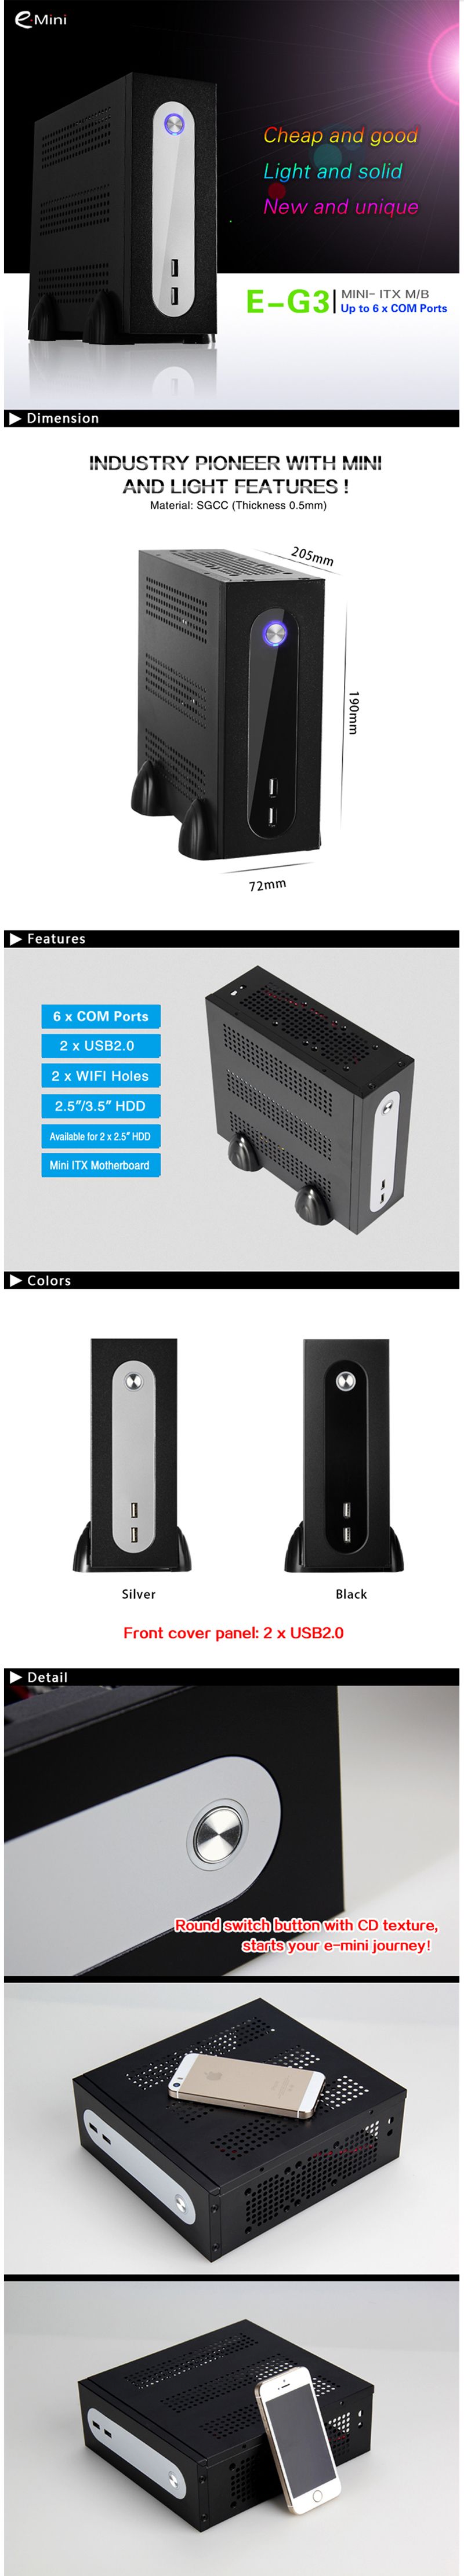 E-MINI-E-G3-Mini-PC-Case-Mini-ITX-Chassis-HTPC-Computer-case-USB20-35-HDD-SGCC-05mm-ITX-case-for-Uni-1514697